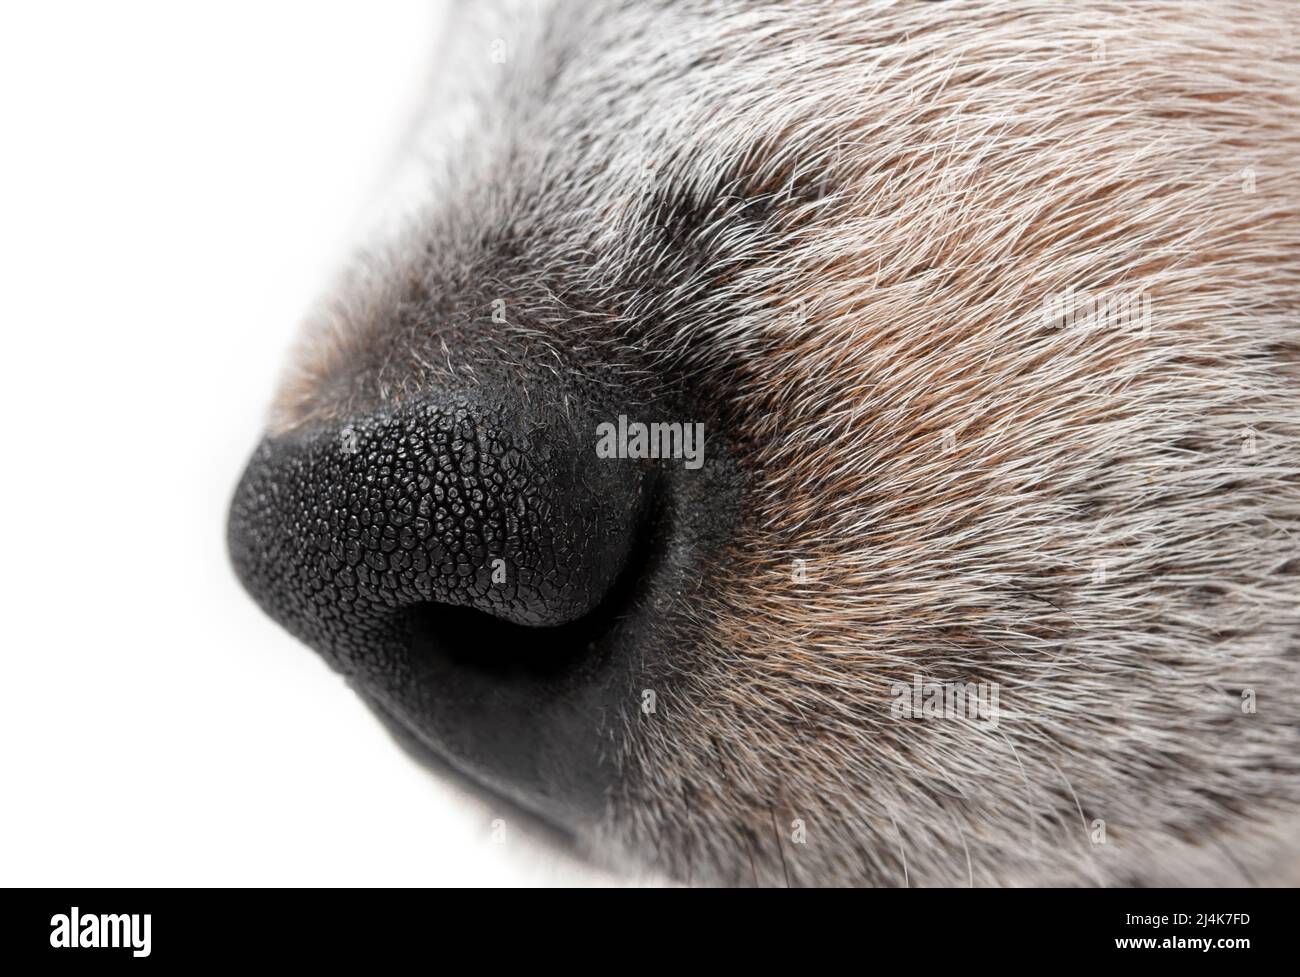 Nasen-Seitenprofil des Hundes, Nahaufnahme. Seitenprofil eines schwarzen und weißen Hundes mit schwarzer Nase. 9 Wochen alter blauer Rüde-Heeler-Welpe. Makro von Kurzhaar Hund Stockfoto